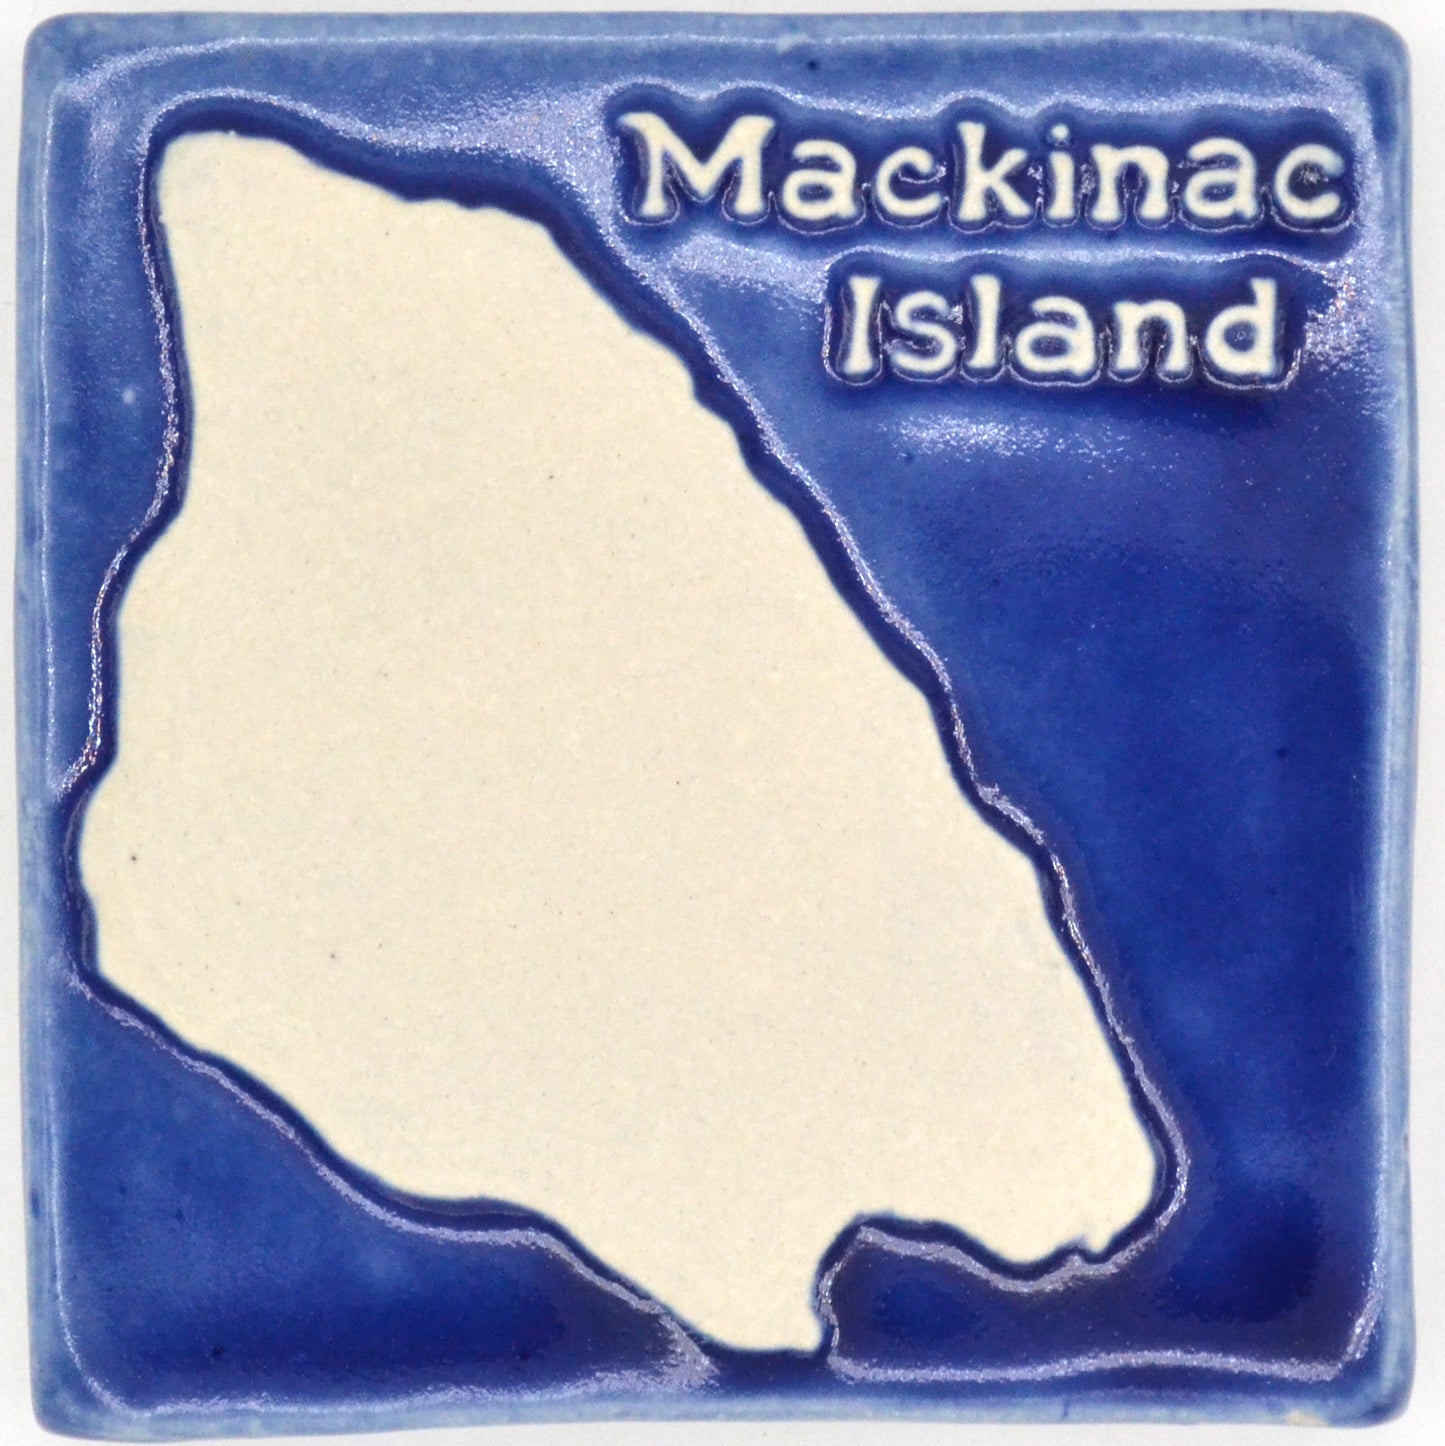 4x4 Mackinac island tile